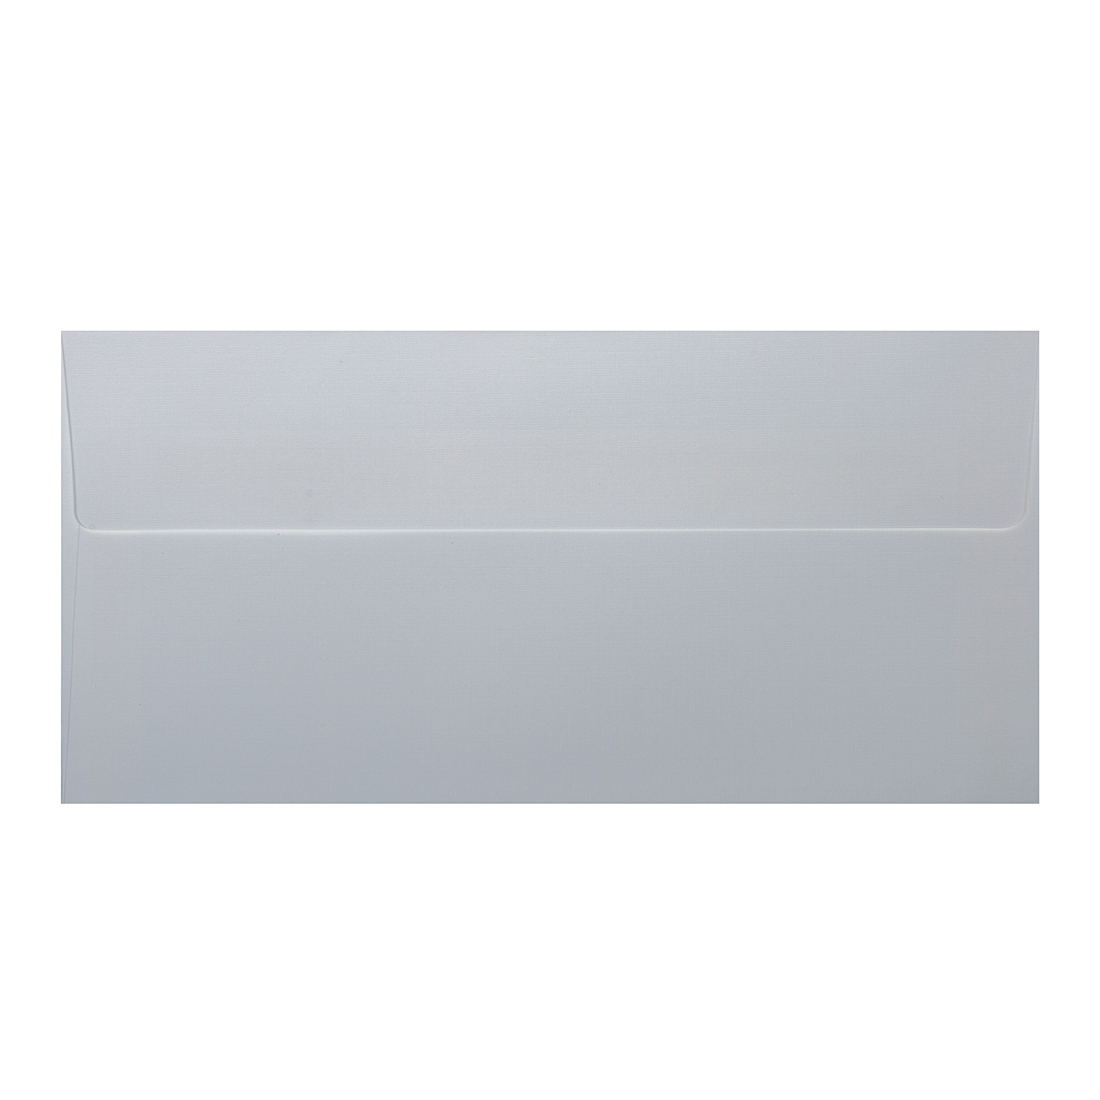 Wysokiej jakości koperty ozdobne - O.Koperta DL - PLECIONY - 120 g/m² - biały - 10 sztuk